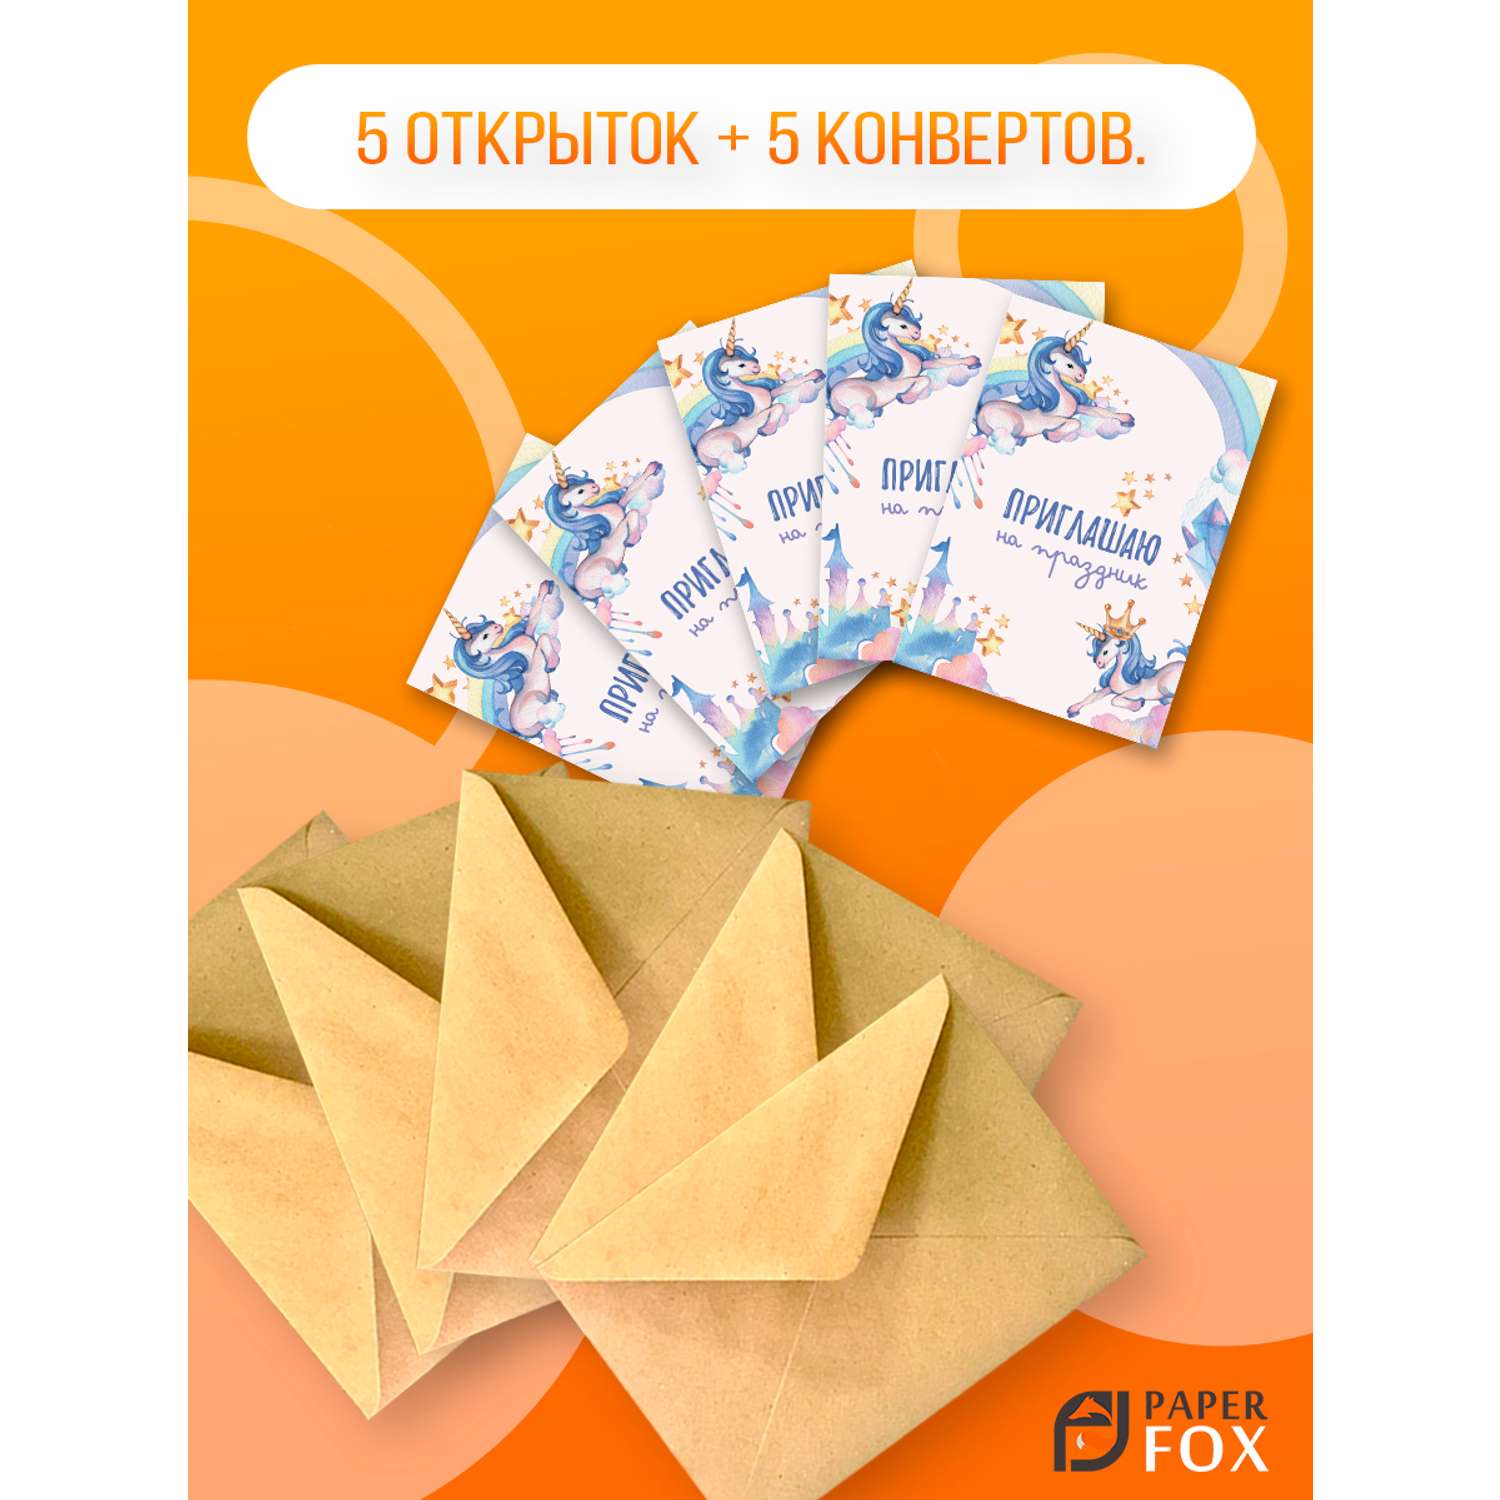 Набор открыток PaperFox пригласительных Единорожек 5 открыток 5 конвертов - фото 2